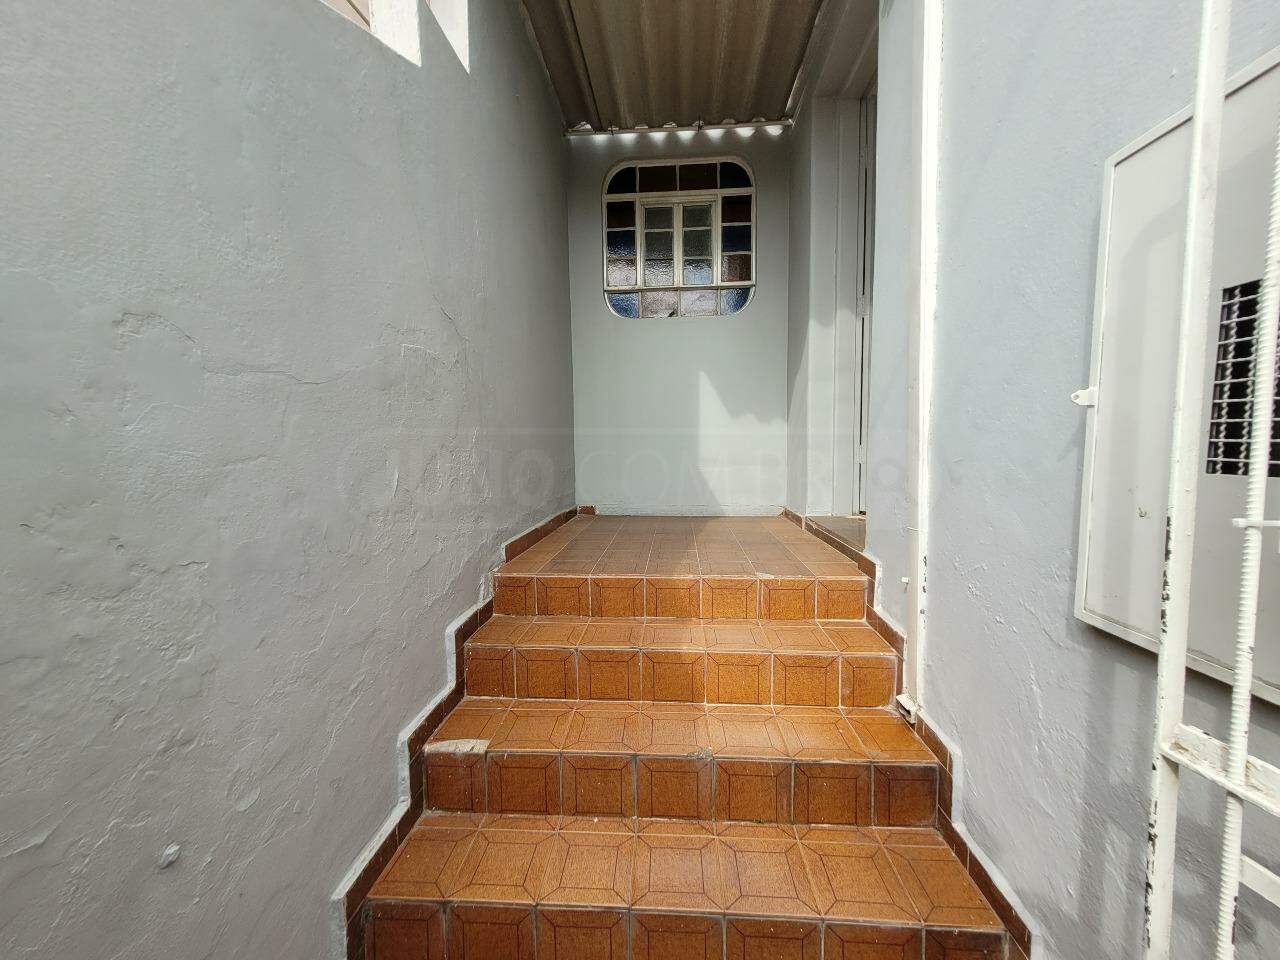 Casa à venda, 3 quartos, no bairro Cidade Alta em Piracicaba - SP